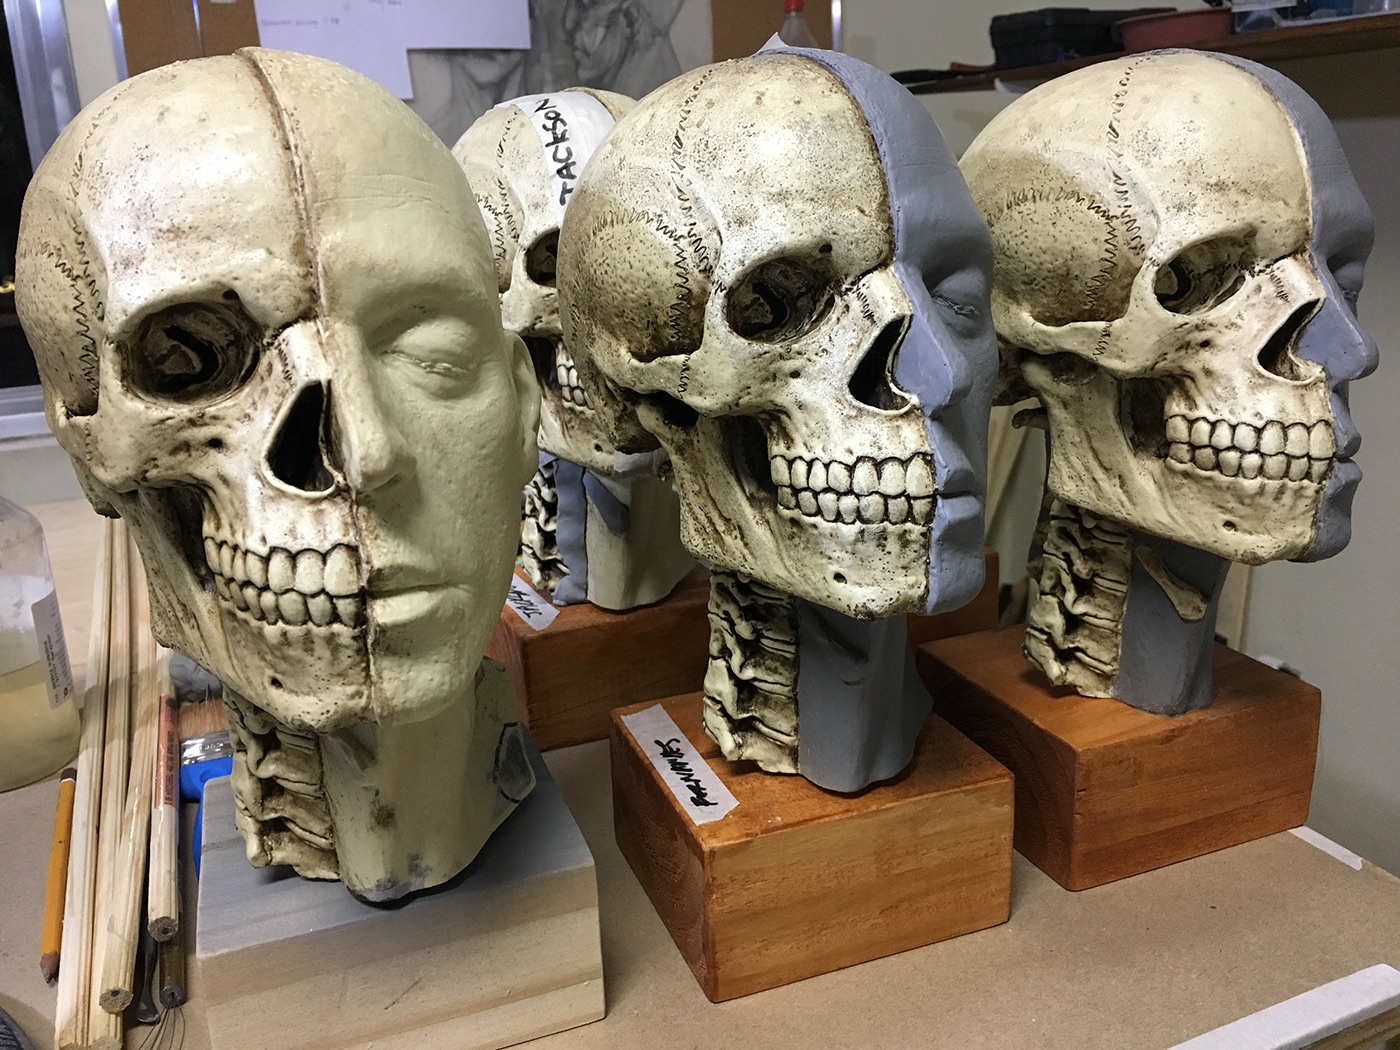 Anatomy traditional art sculptor resin skull